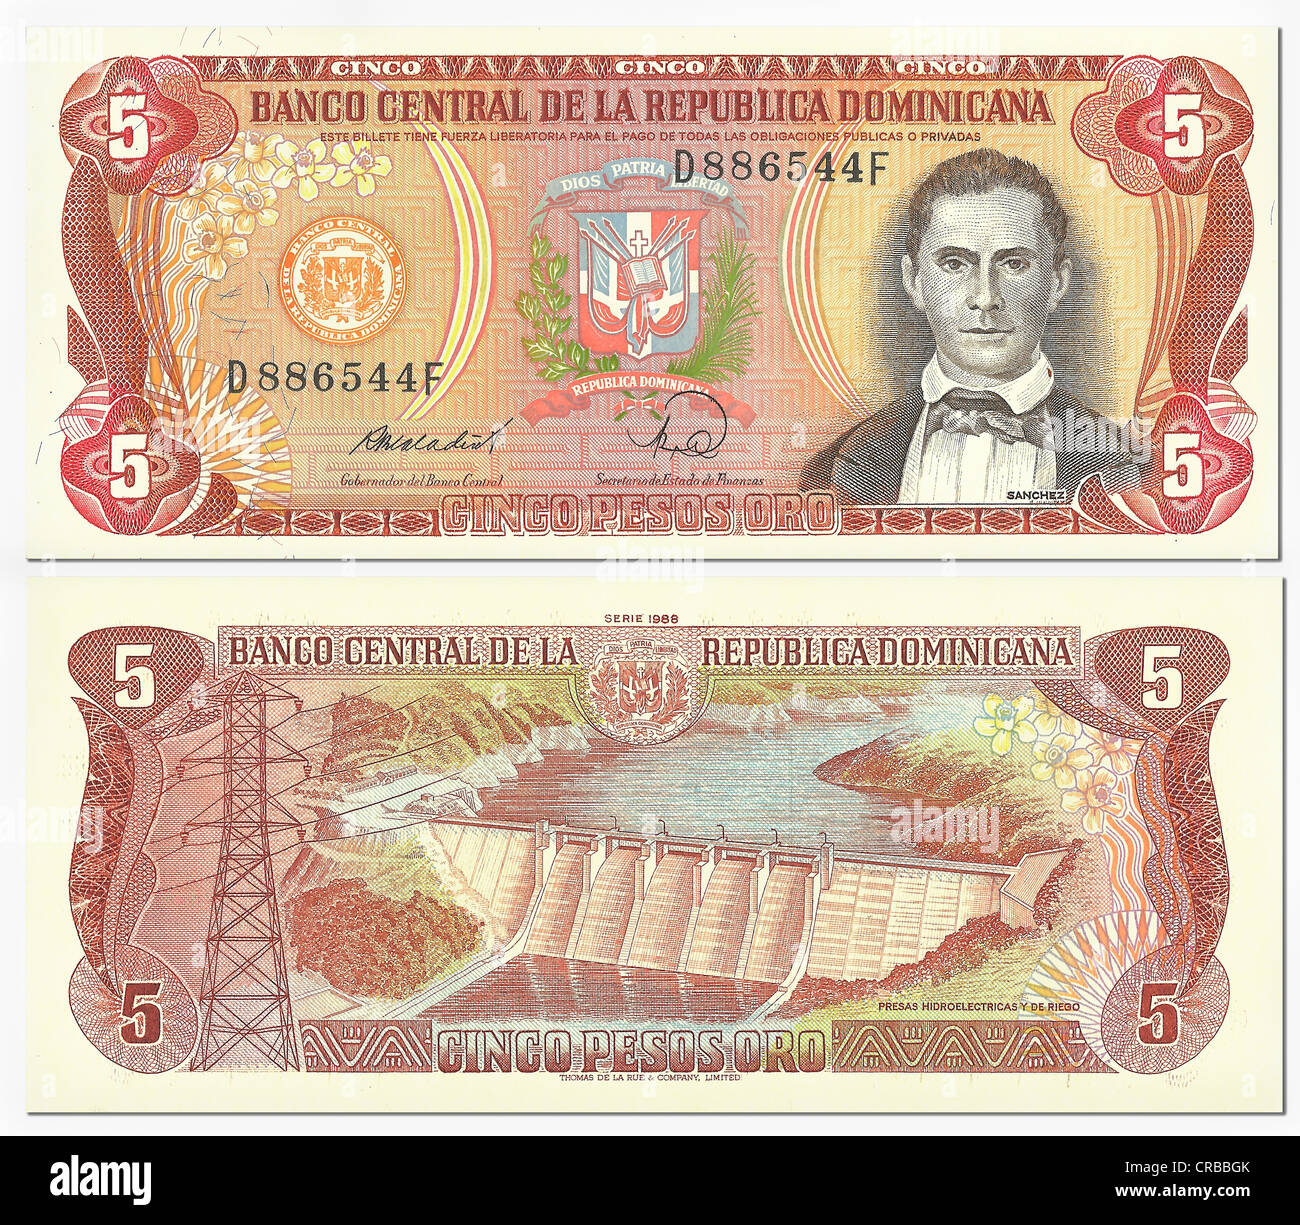 Historic banknote, front and back, 5 pesos oro, Dominican Republic, Banco Central Republica Dominicana Stock Photo